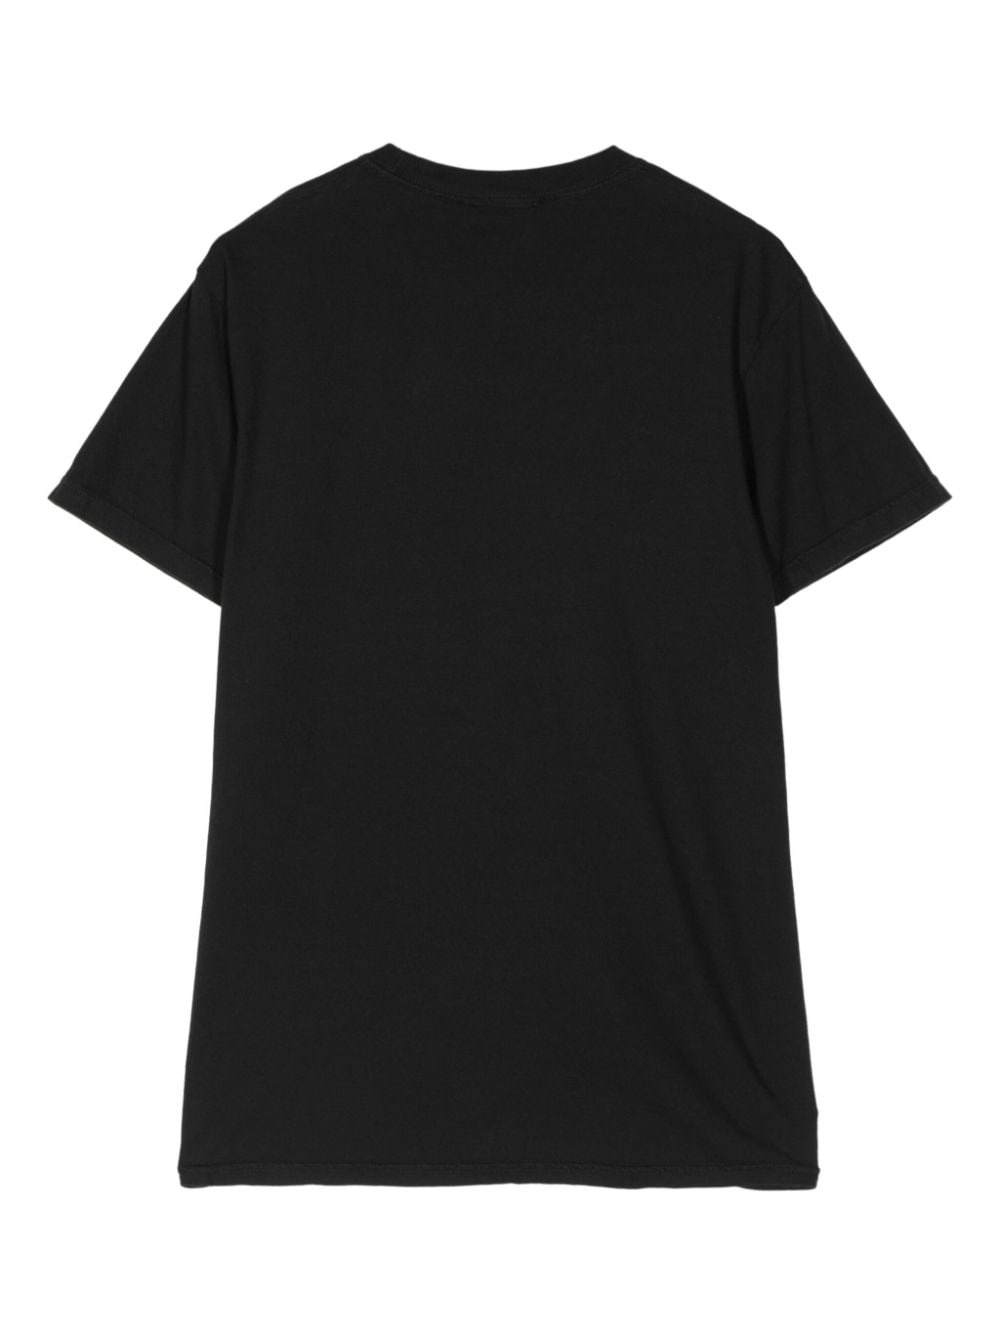 T-shirt nera stampa bubble